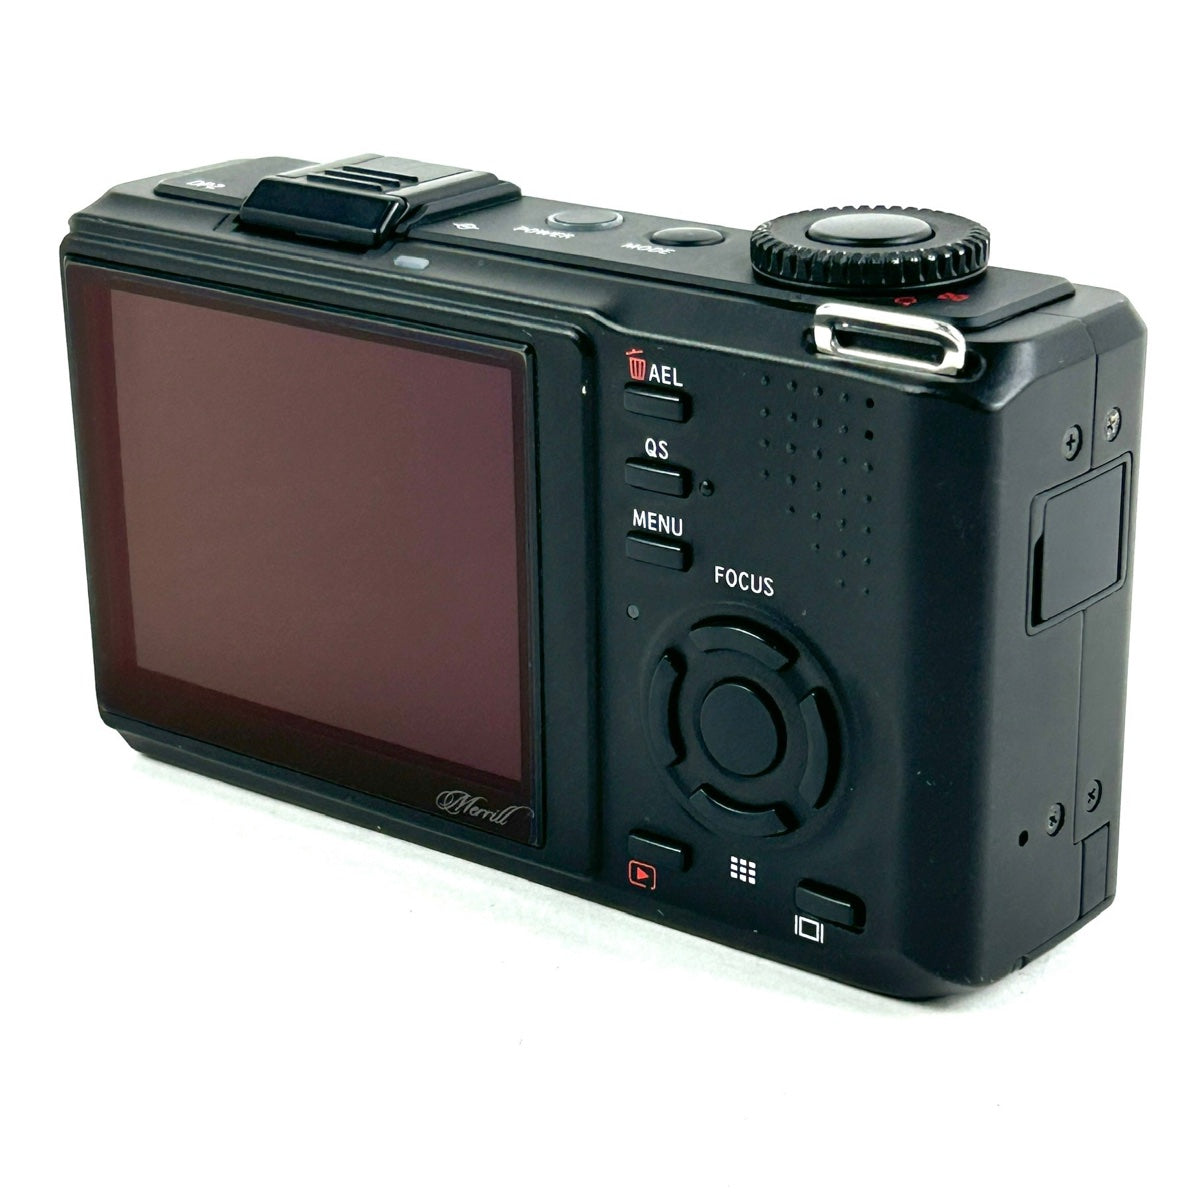 シグマ SIGMA DP2 Merrill コンパクトデジタルカメラ 【中古】